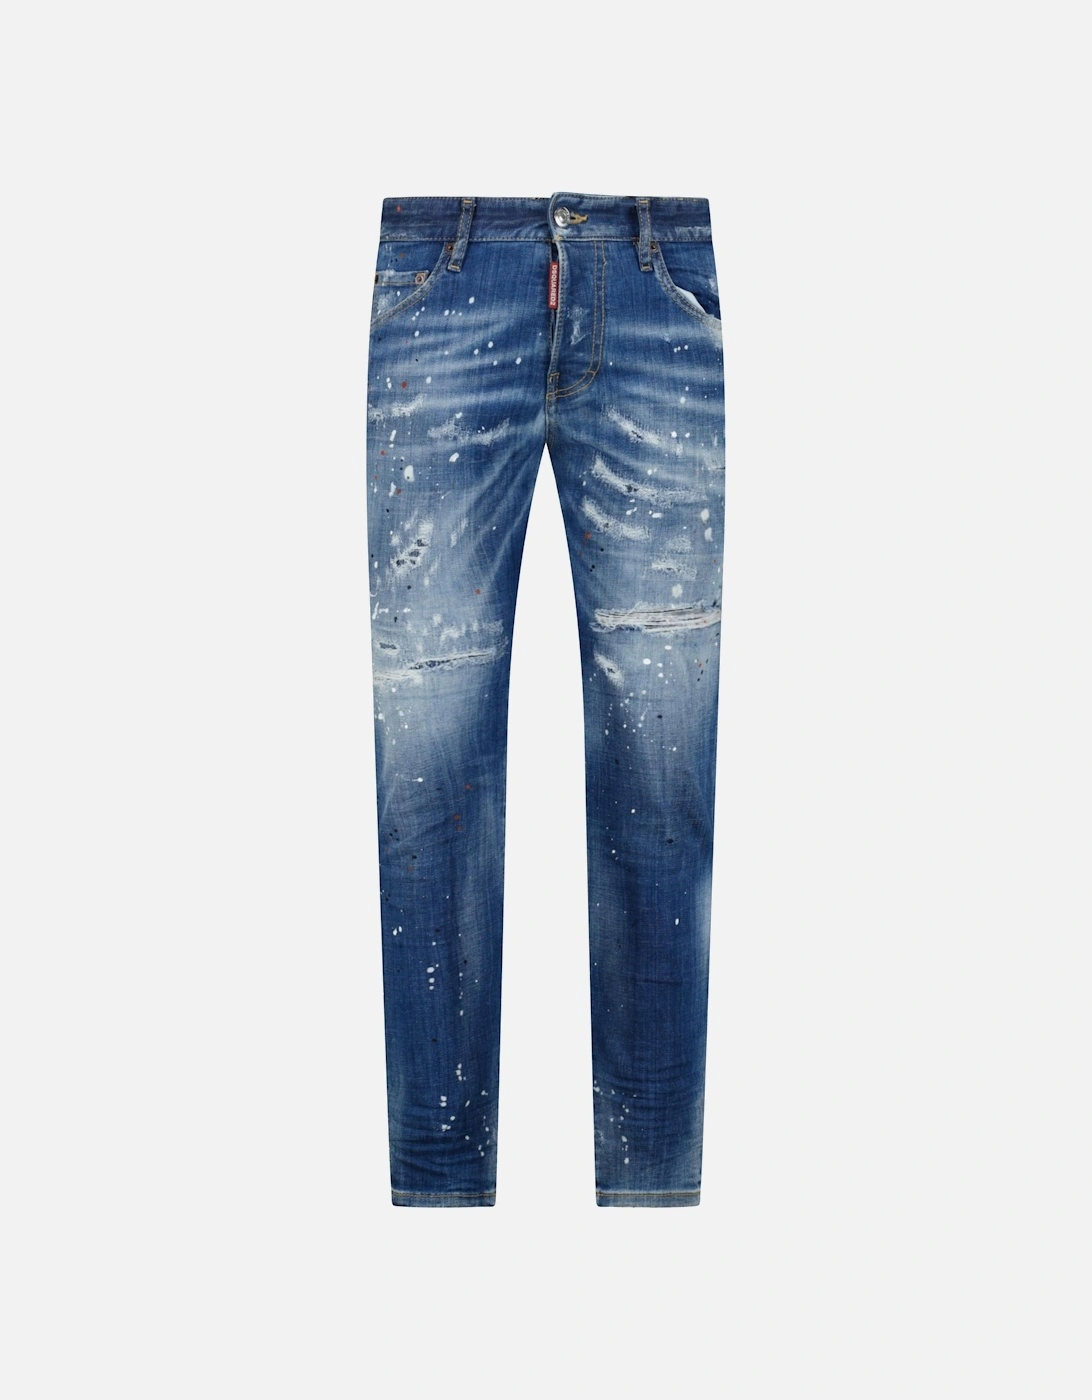 'Slim Jean' Orange & White Paint Splatter Jeans Blue, 5 of 4